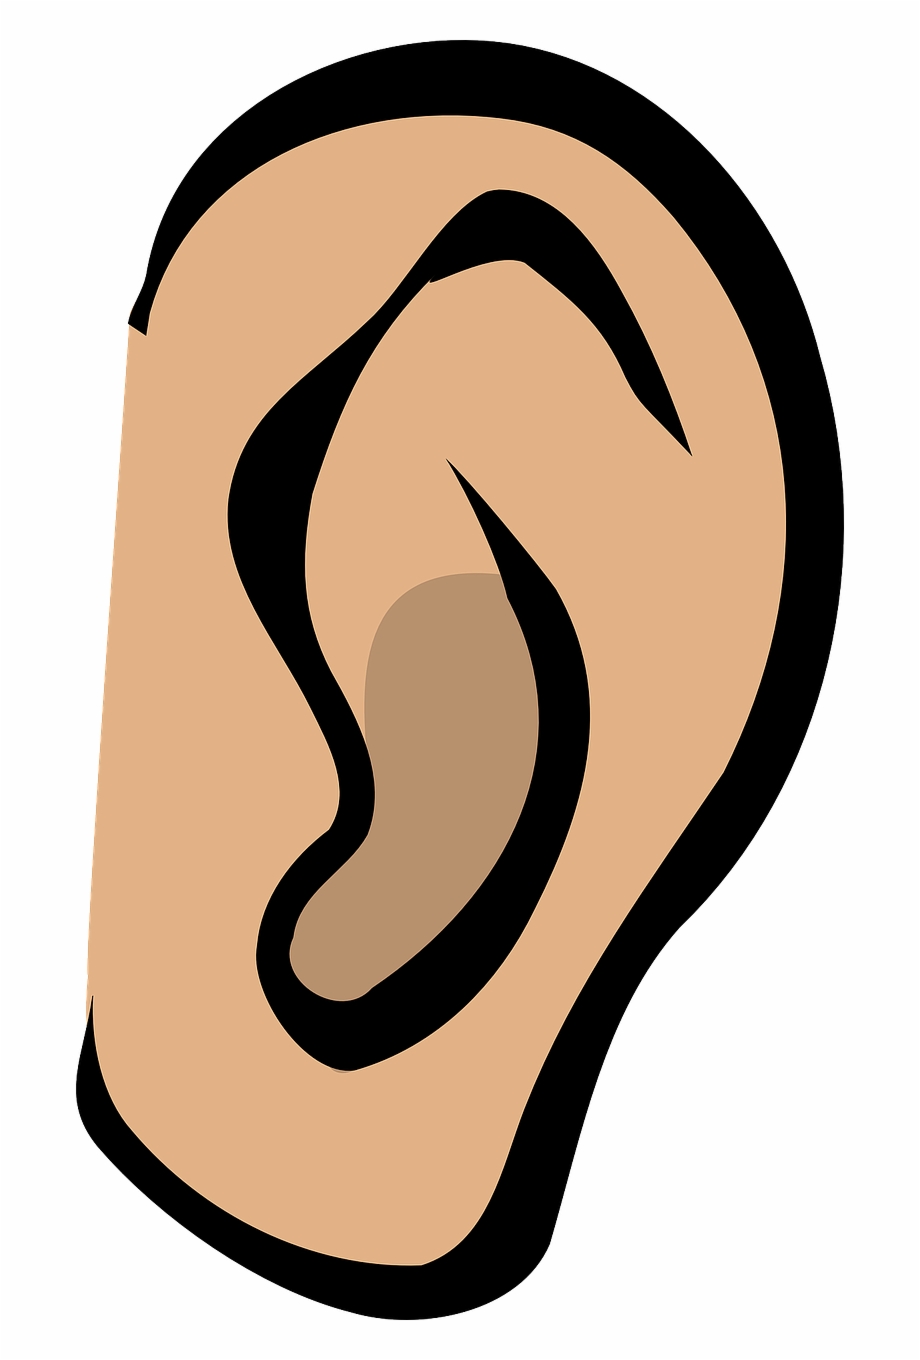 Ear Listen Hear Gossip Sound Whispering Secrets Clip